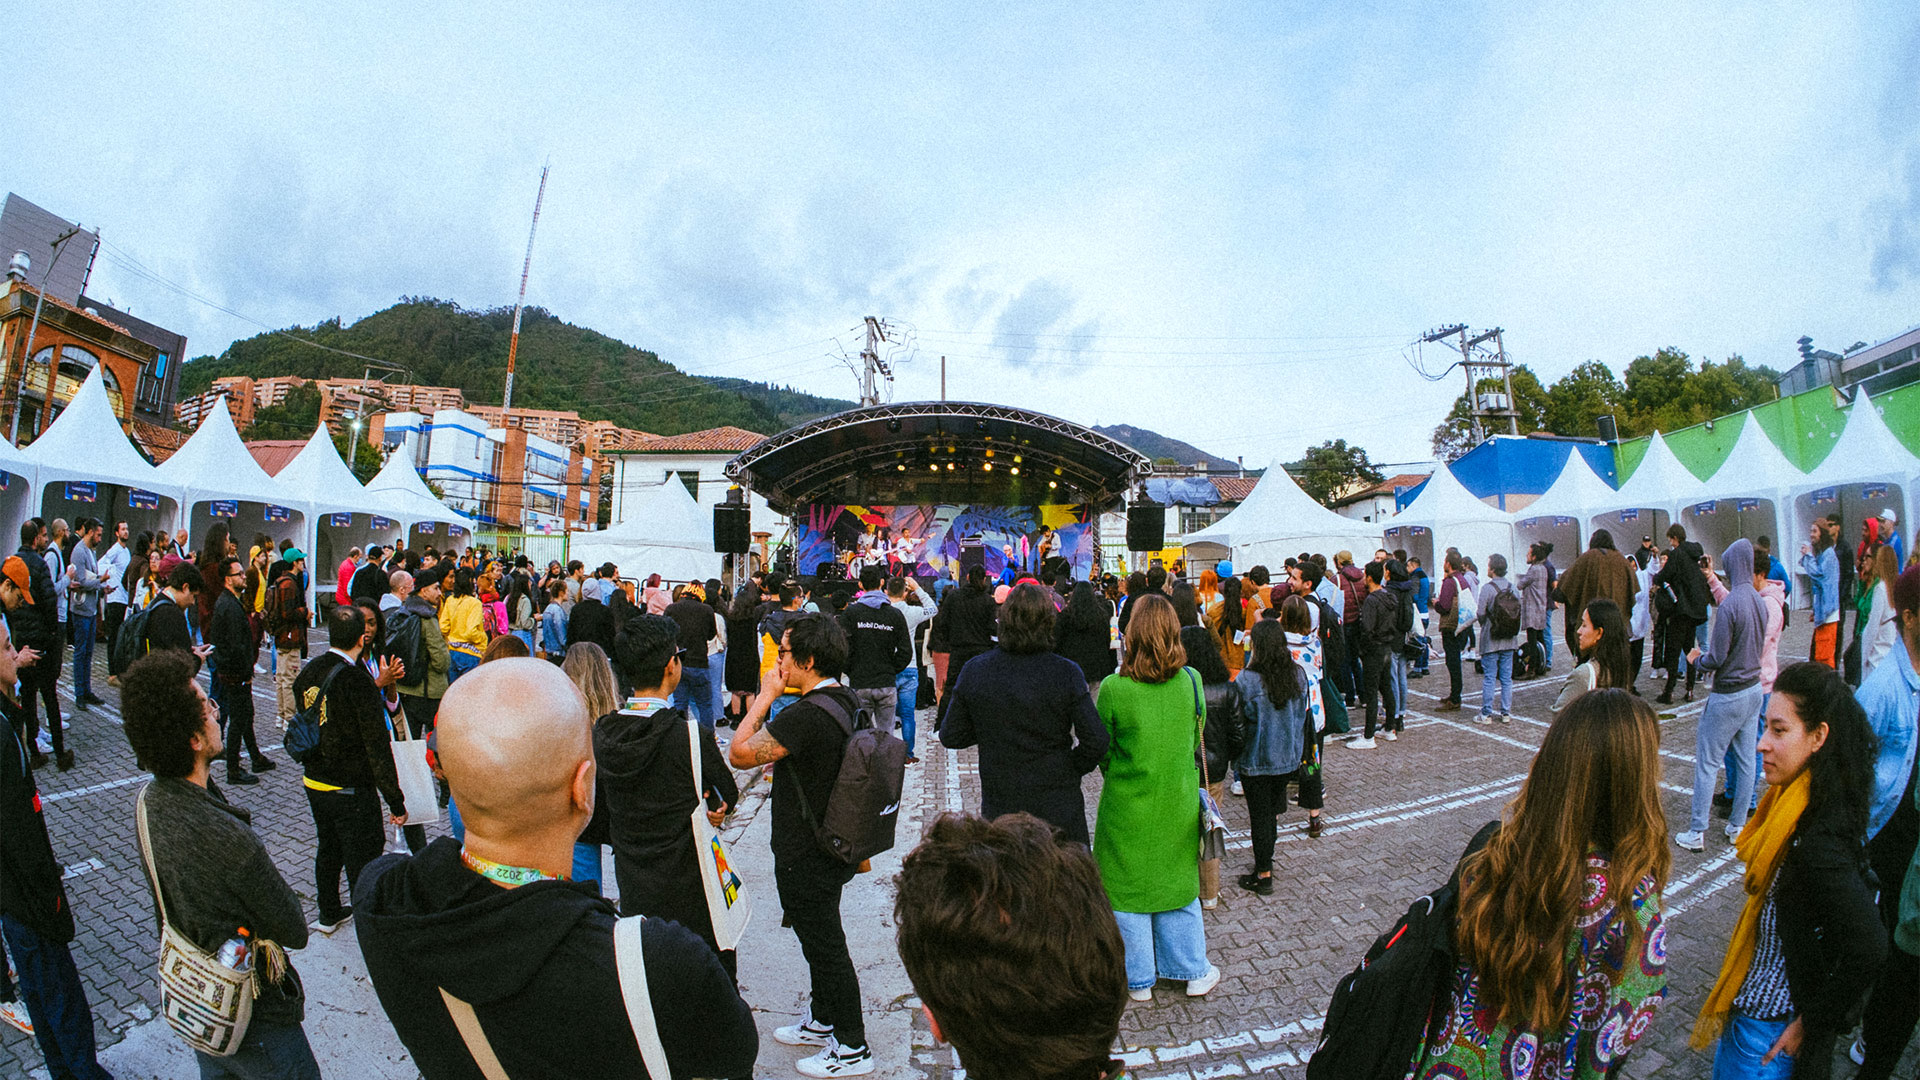 Una postal de los shows al aire libre en un escenario montado en pleno barrio de Usaquen, al norte de Bogotá